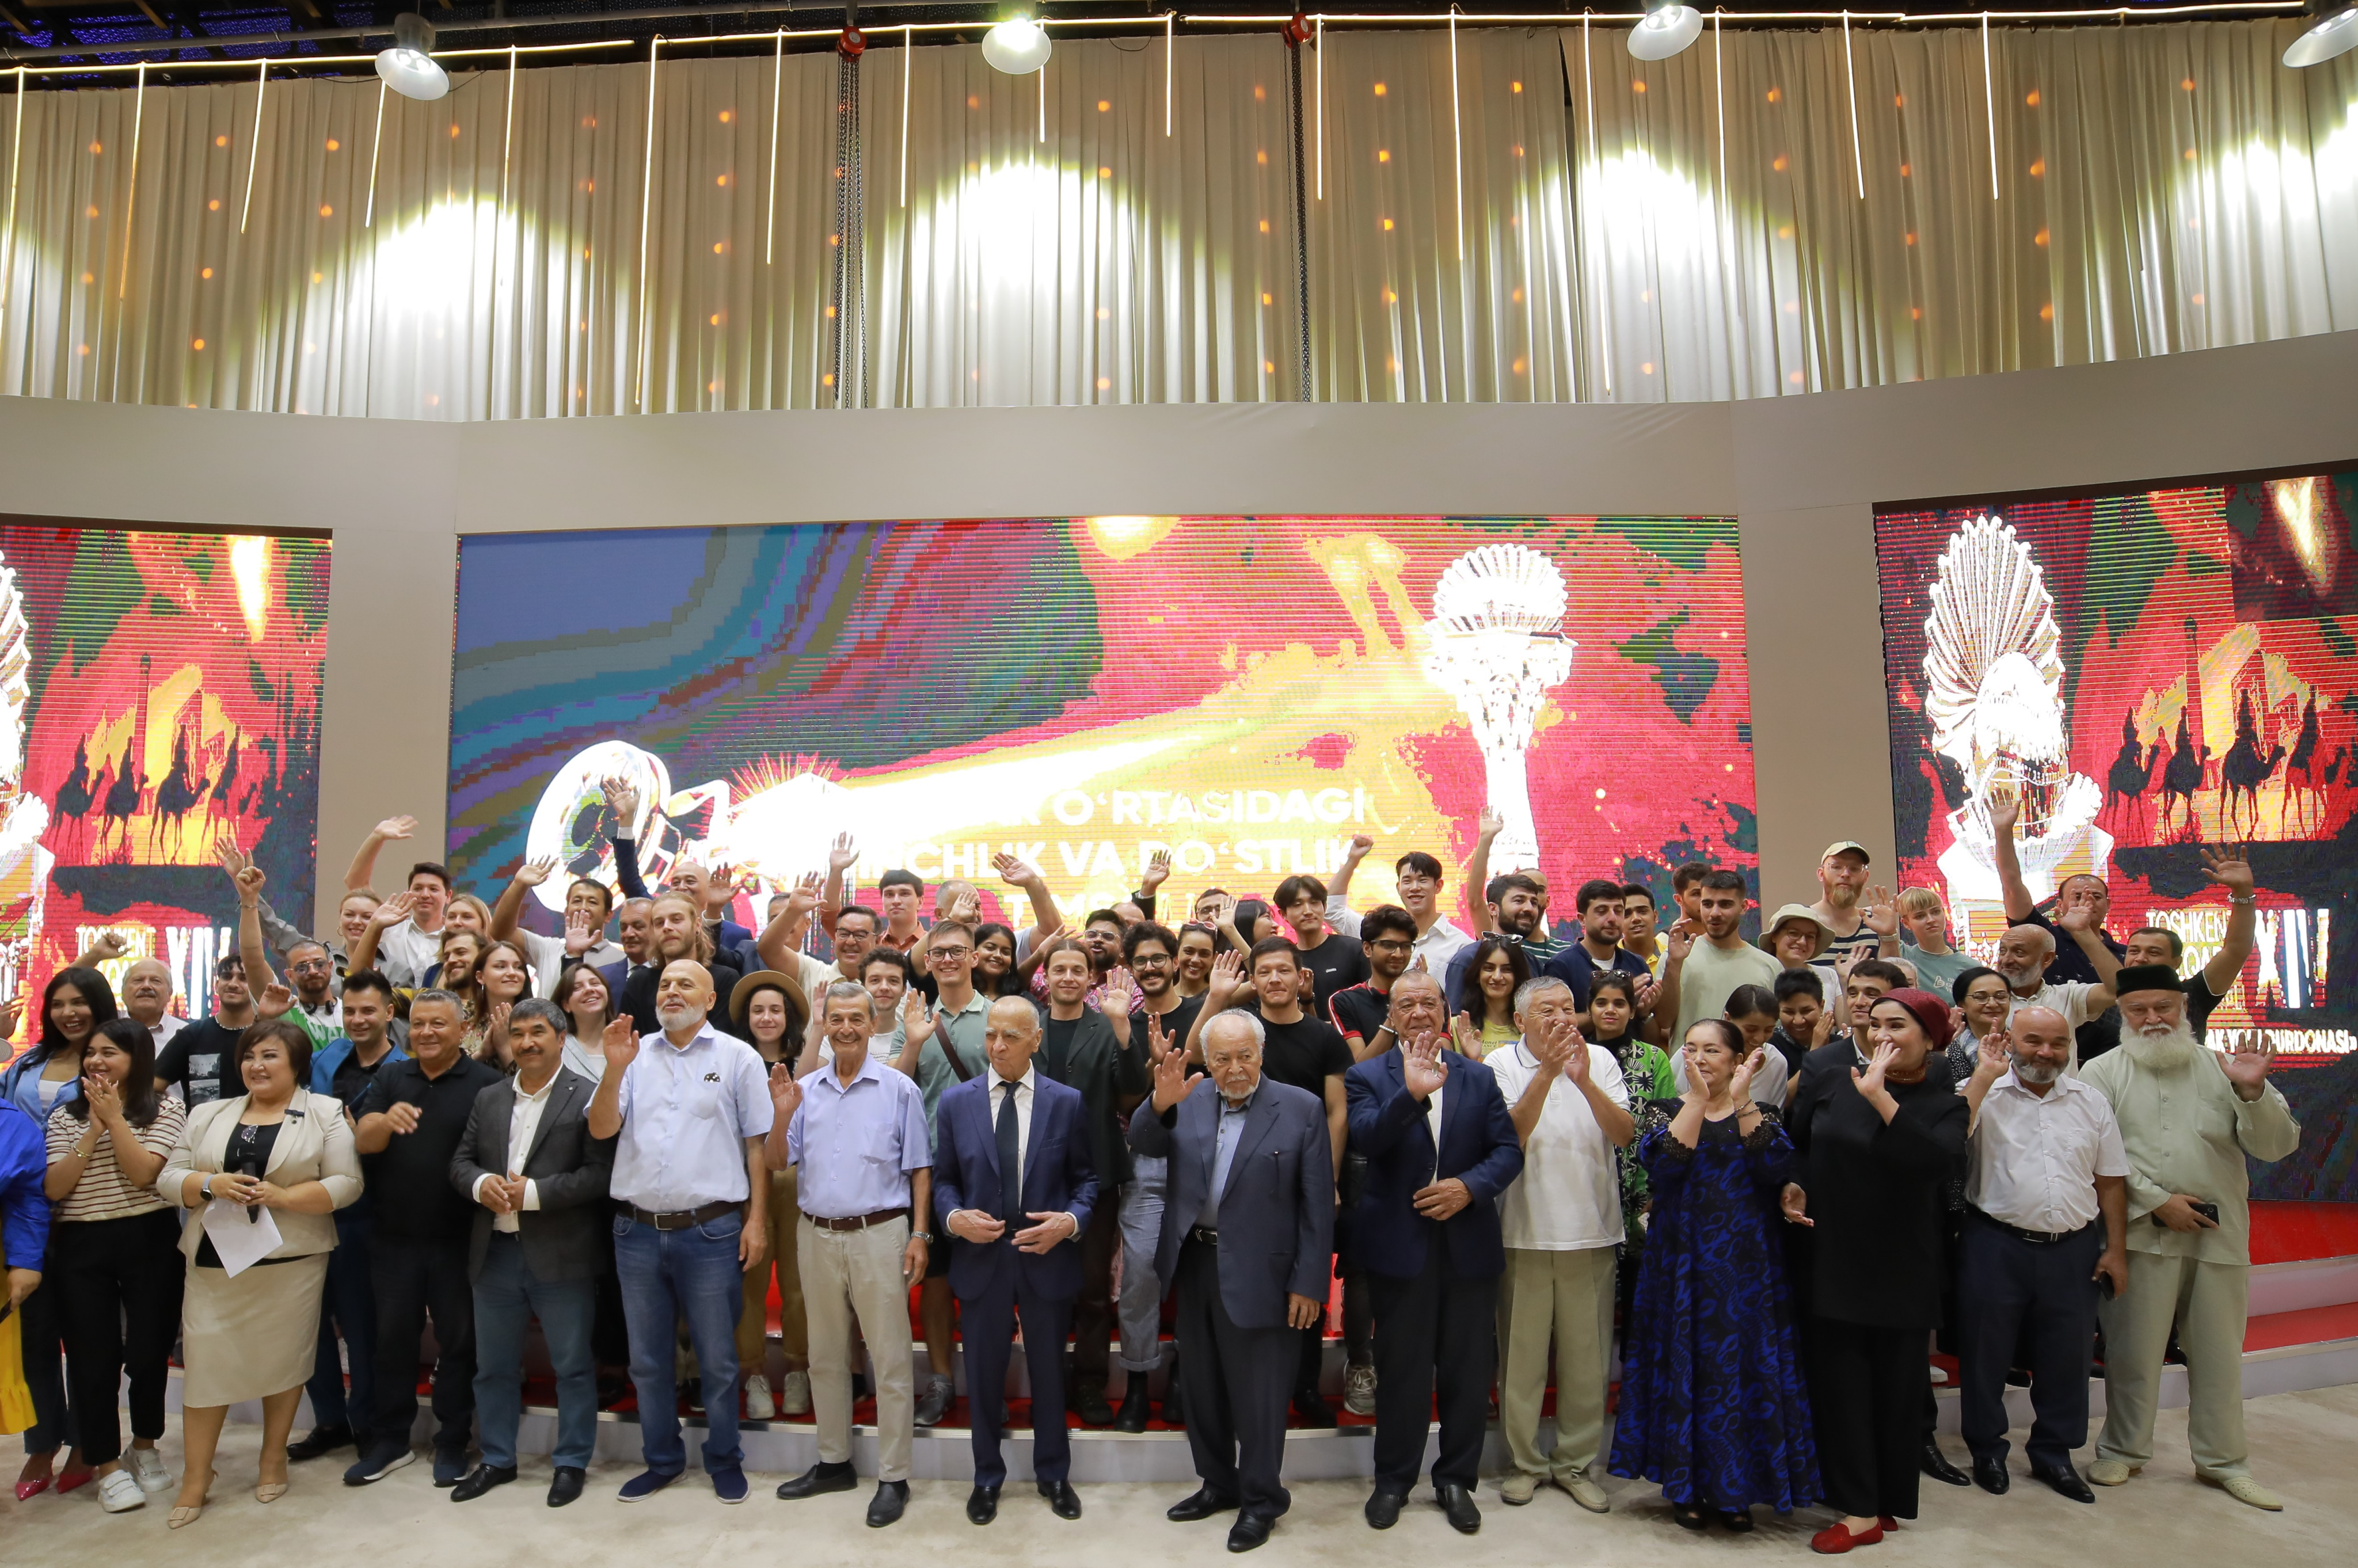 В Ташкенте прошла пресс-конференция, посвященная старту XIV Ташкентского международного кинофестиваля «Жемчужина шелкового пути»